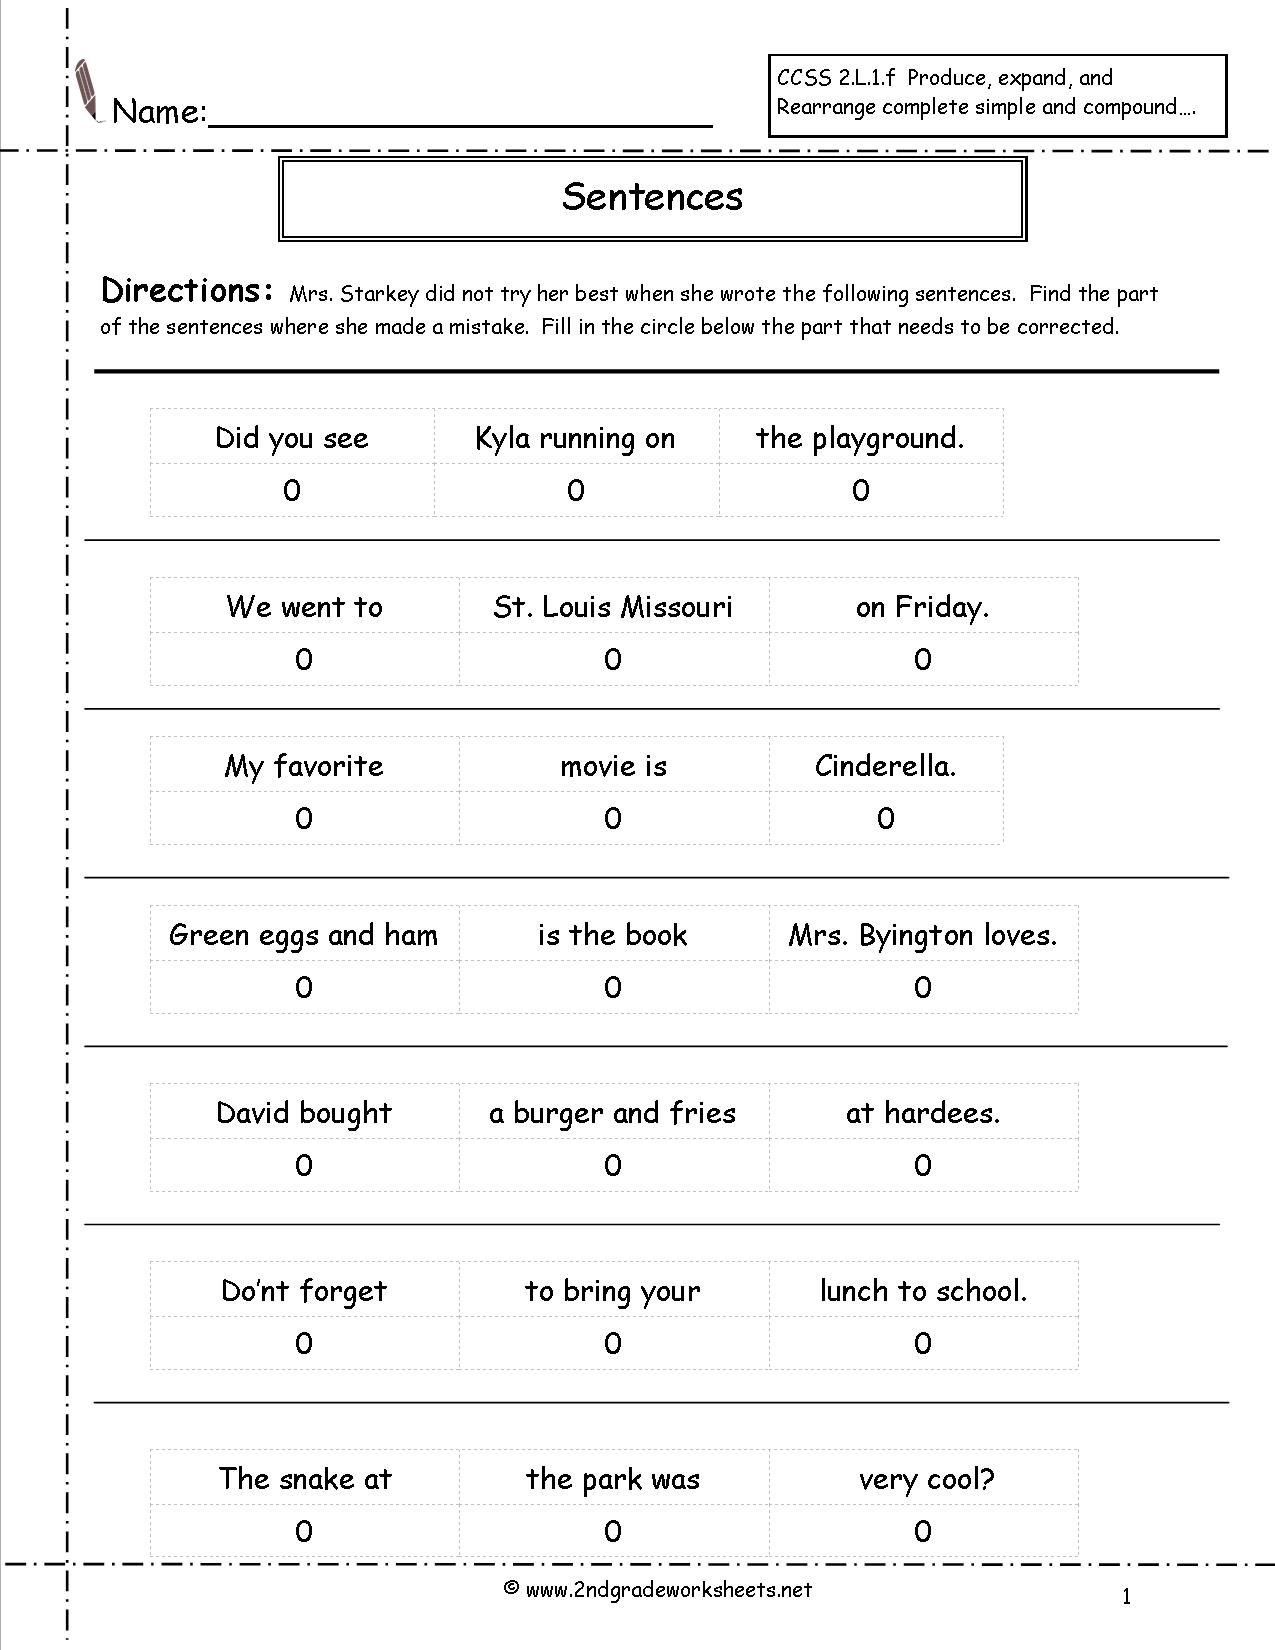 2nd Grade Sentences Worksheets Image